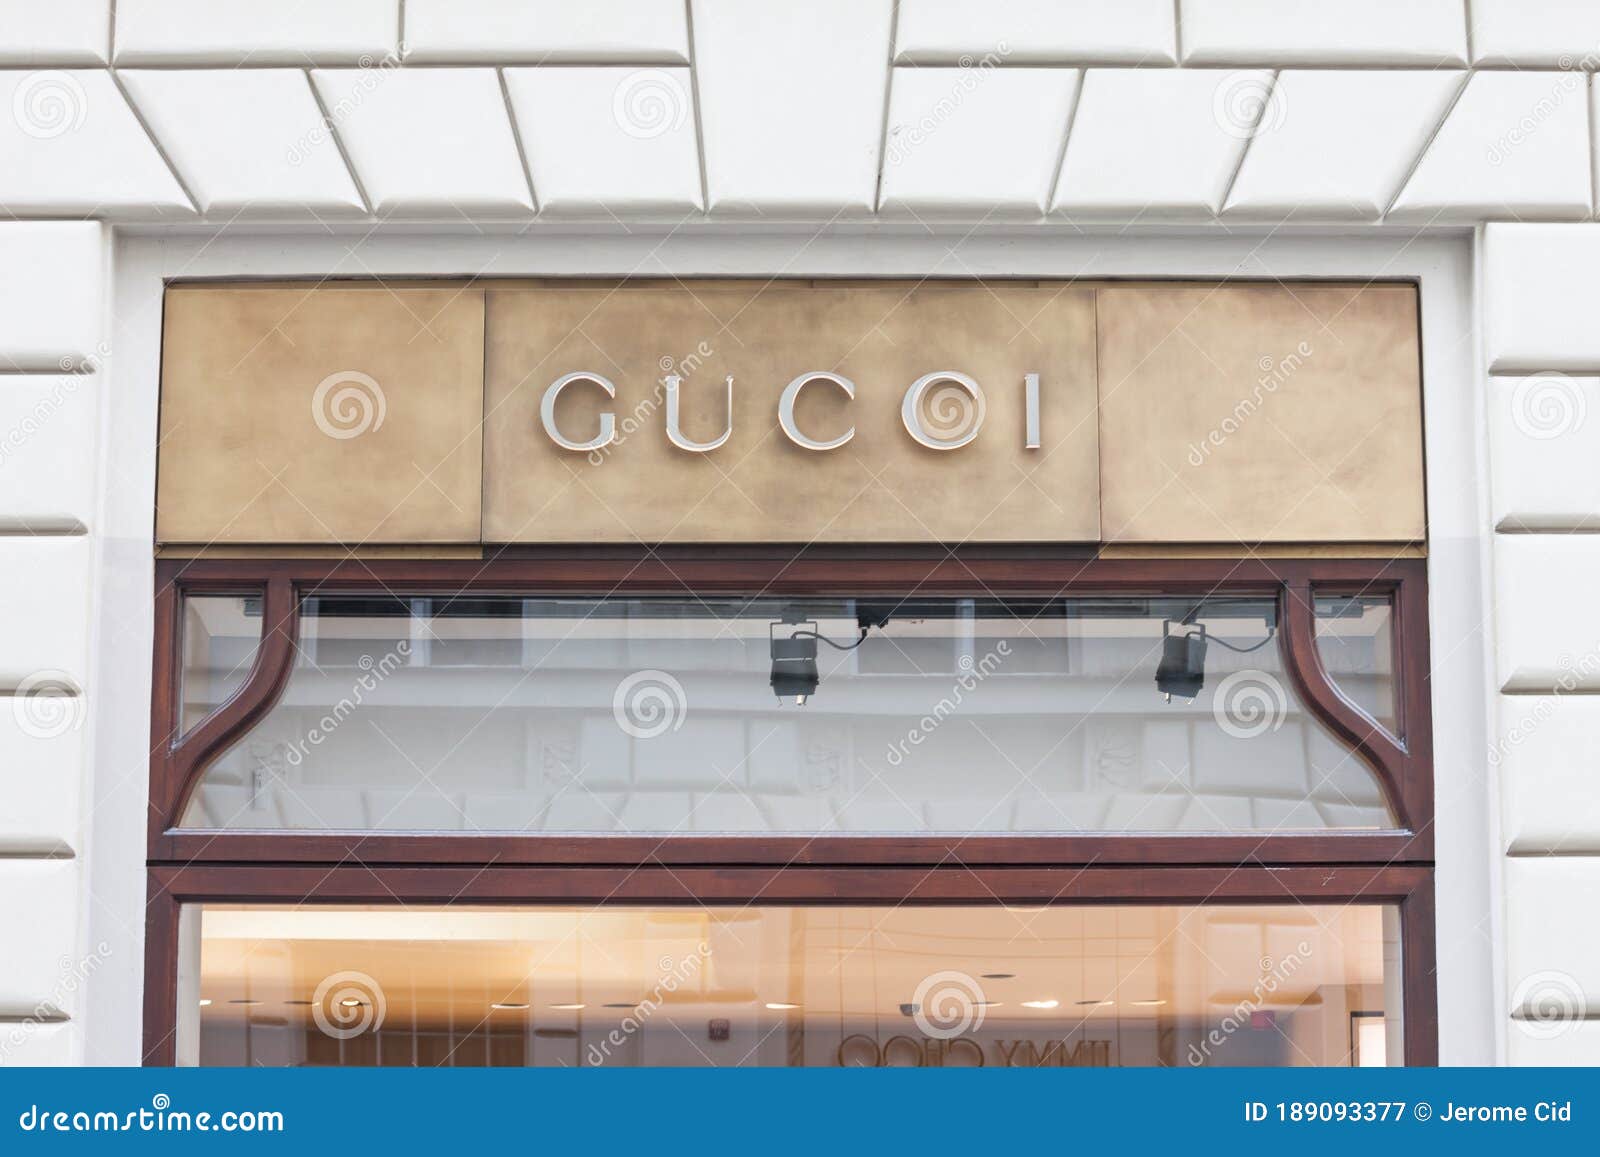 gucci manufacturer